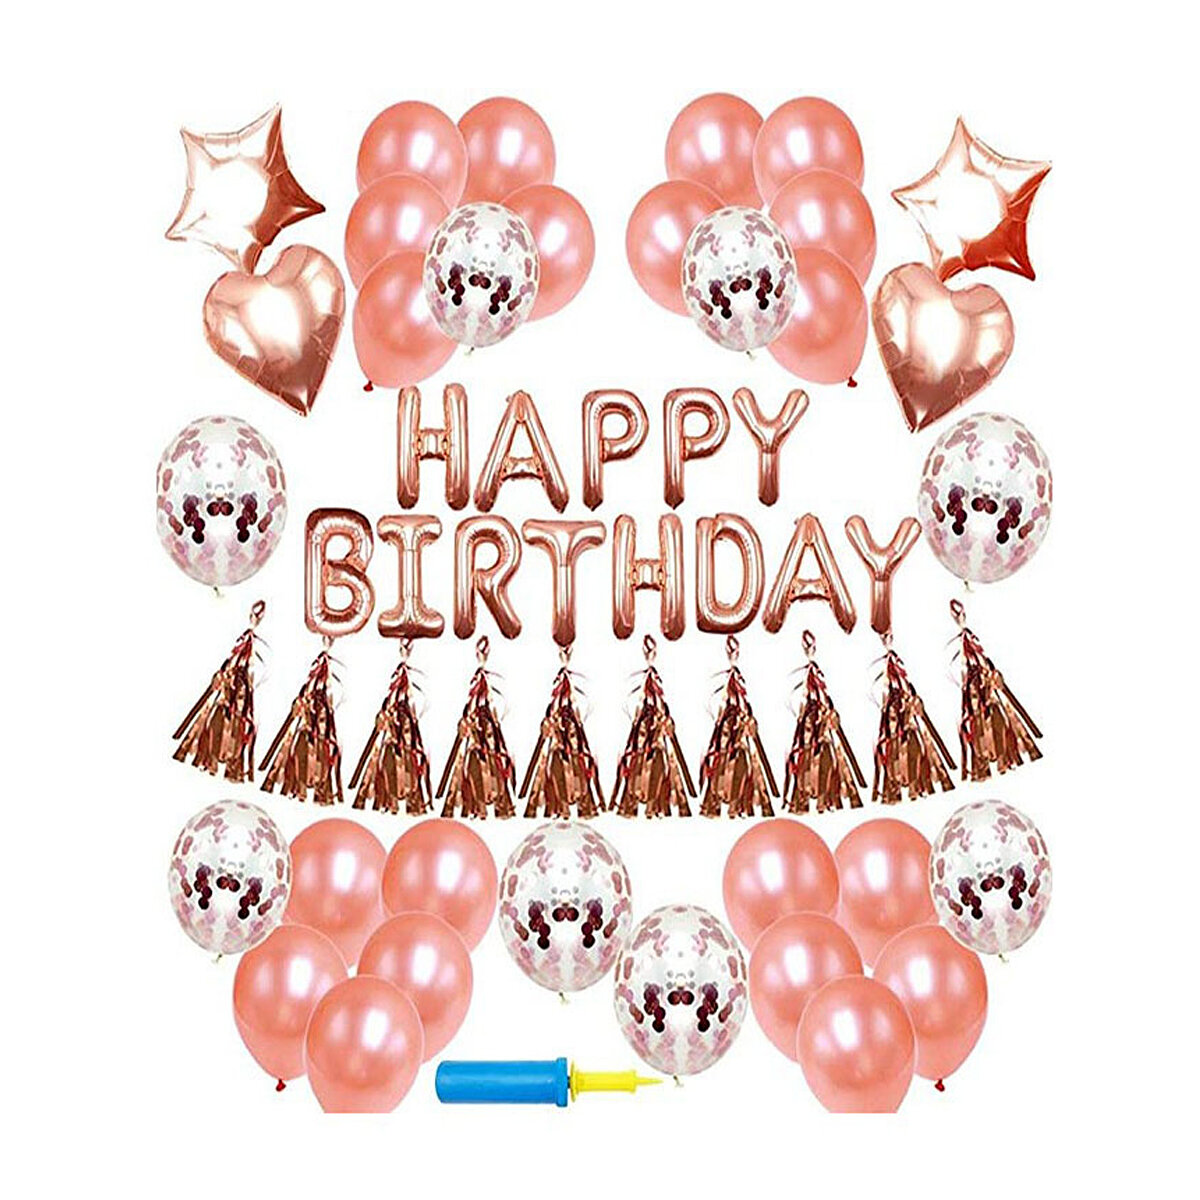 

48шт розовое золото вечеринка по случаю дня рождения воздушные шары с днем рождения письмо фольги воздушный шар декор